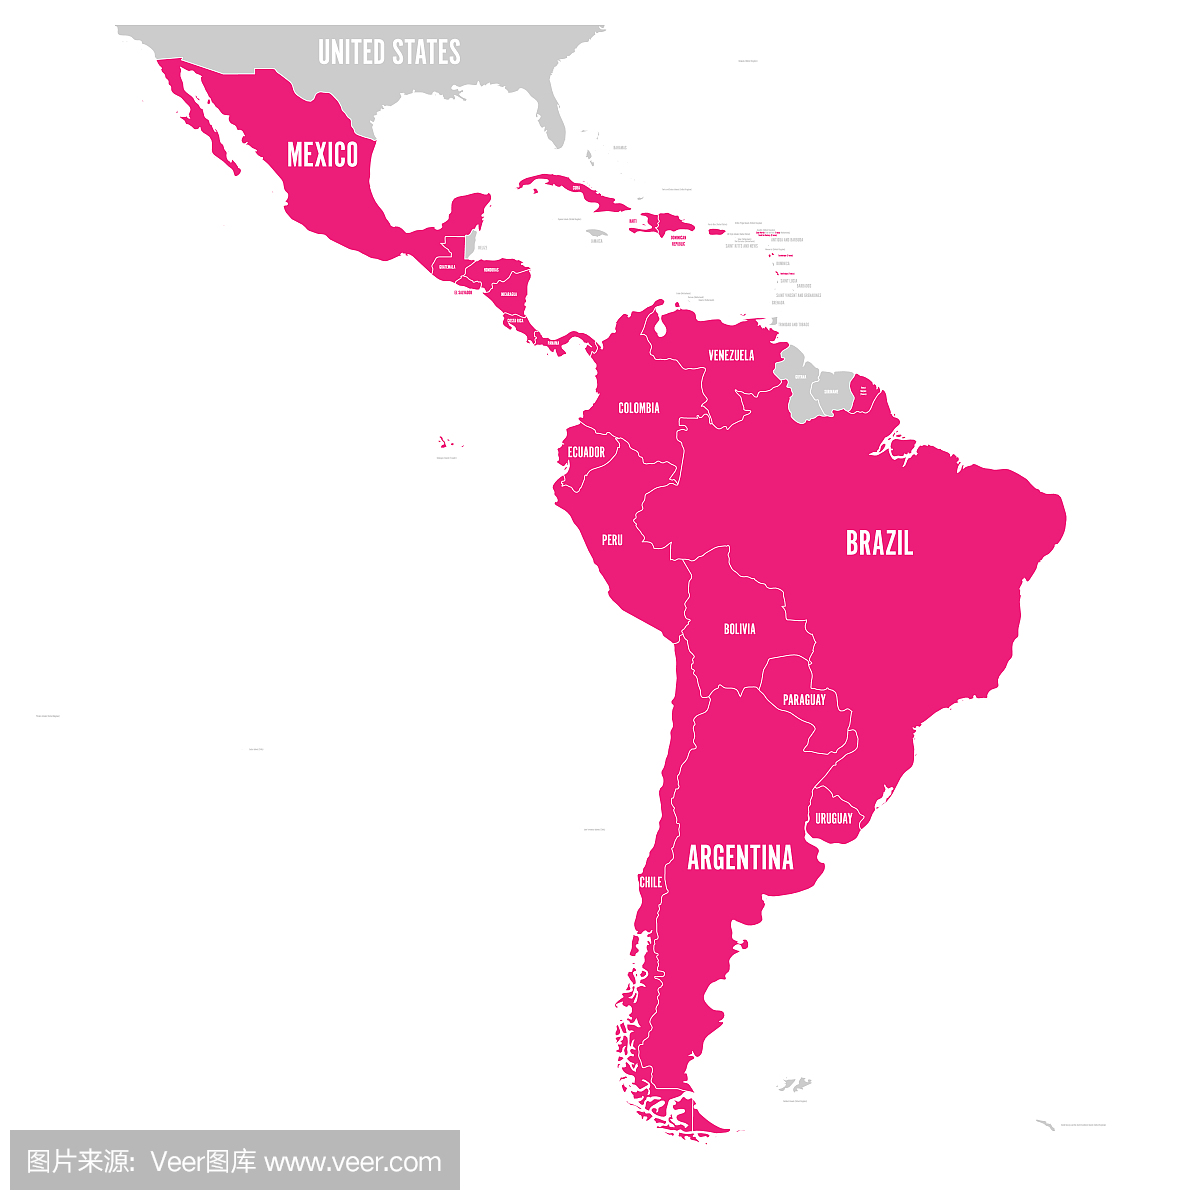 拉丁美洲的政治版图。南美洲,中美洲和加勒比